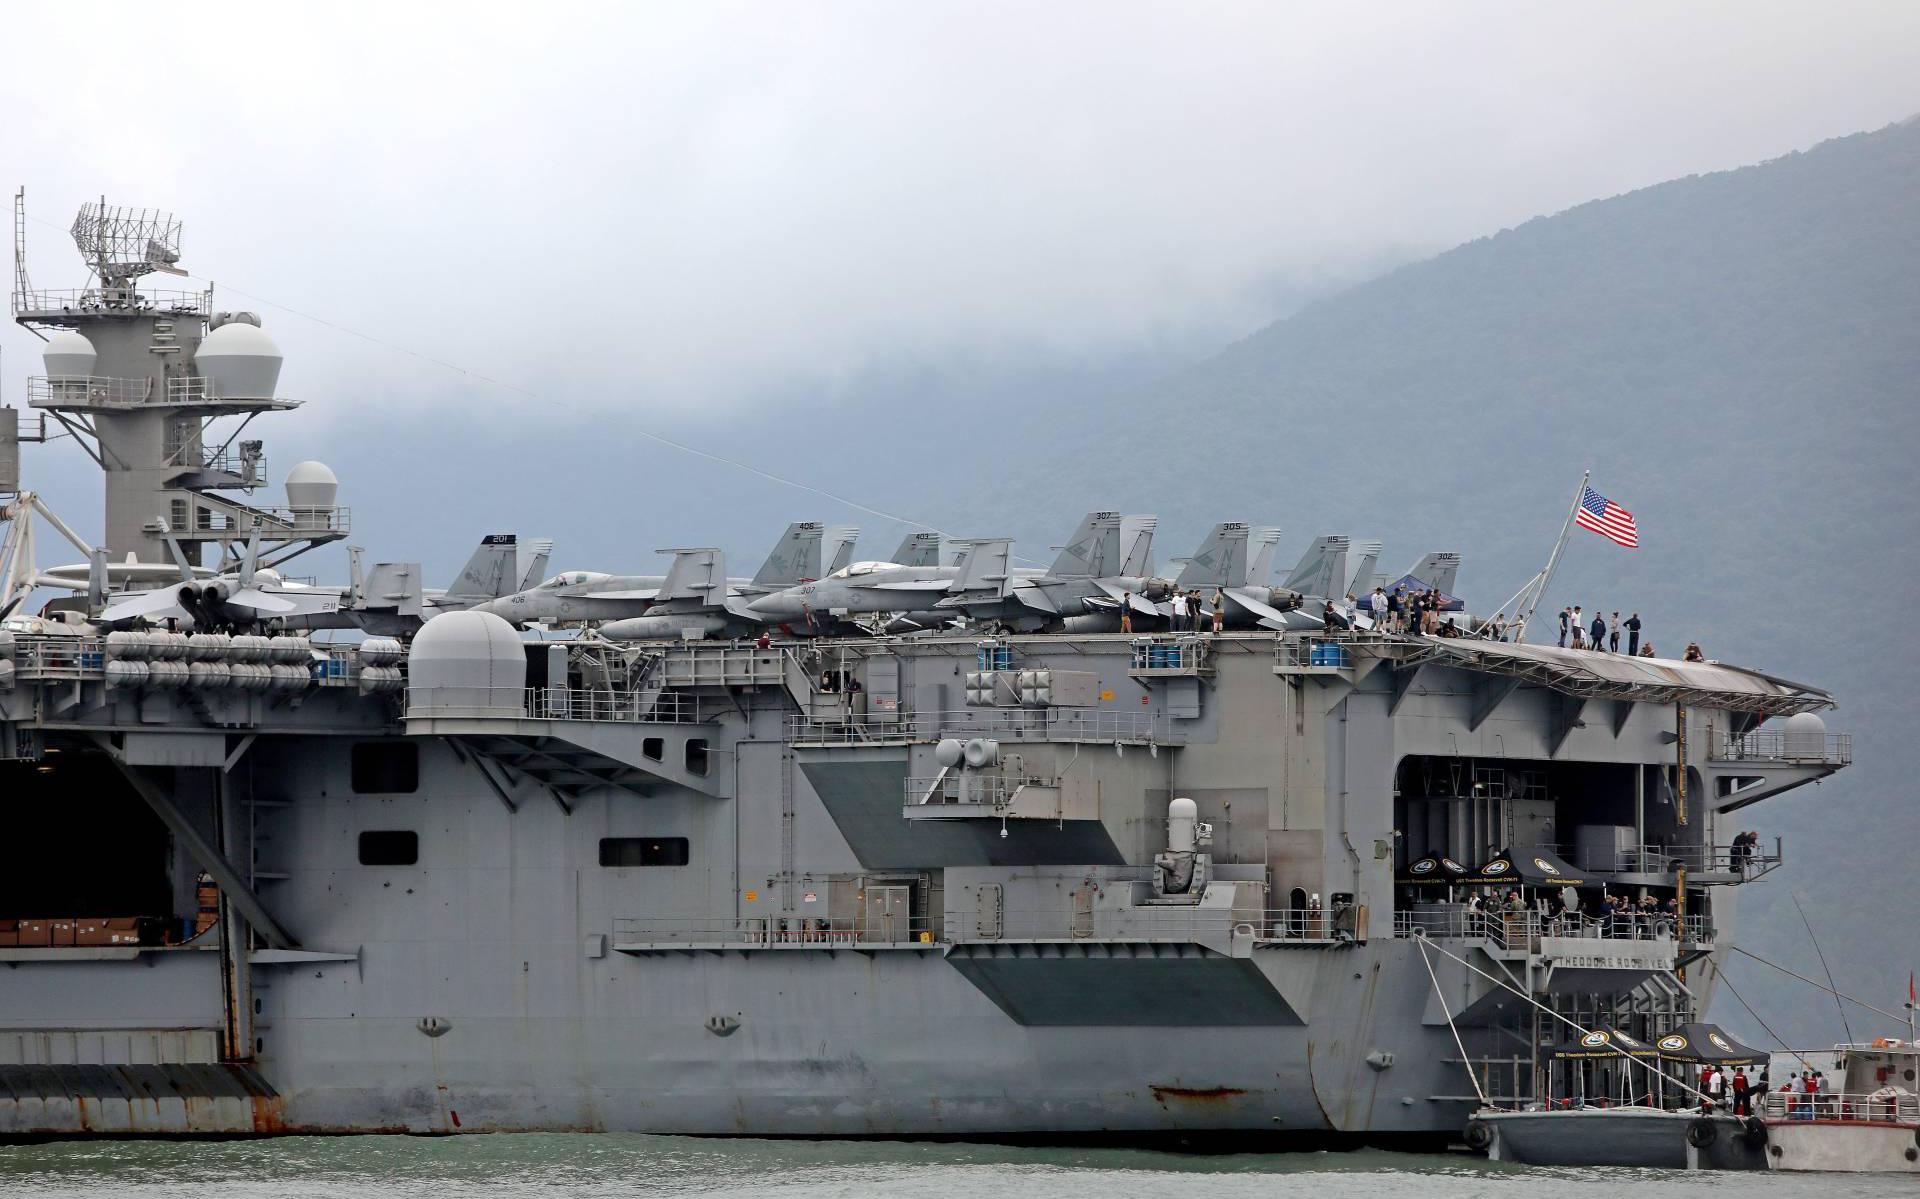 'Marine VS wil ontslag kapitein vliegdekschip terugdraaien'